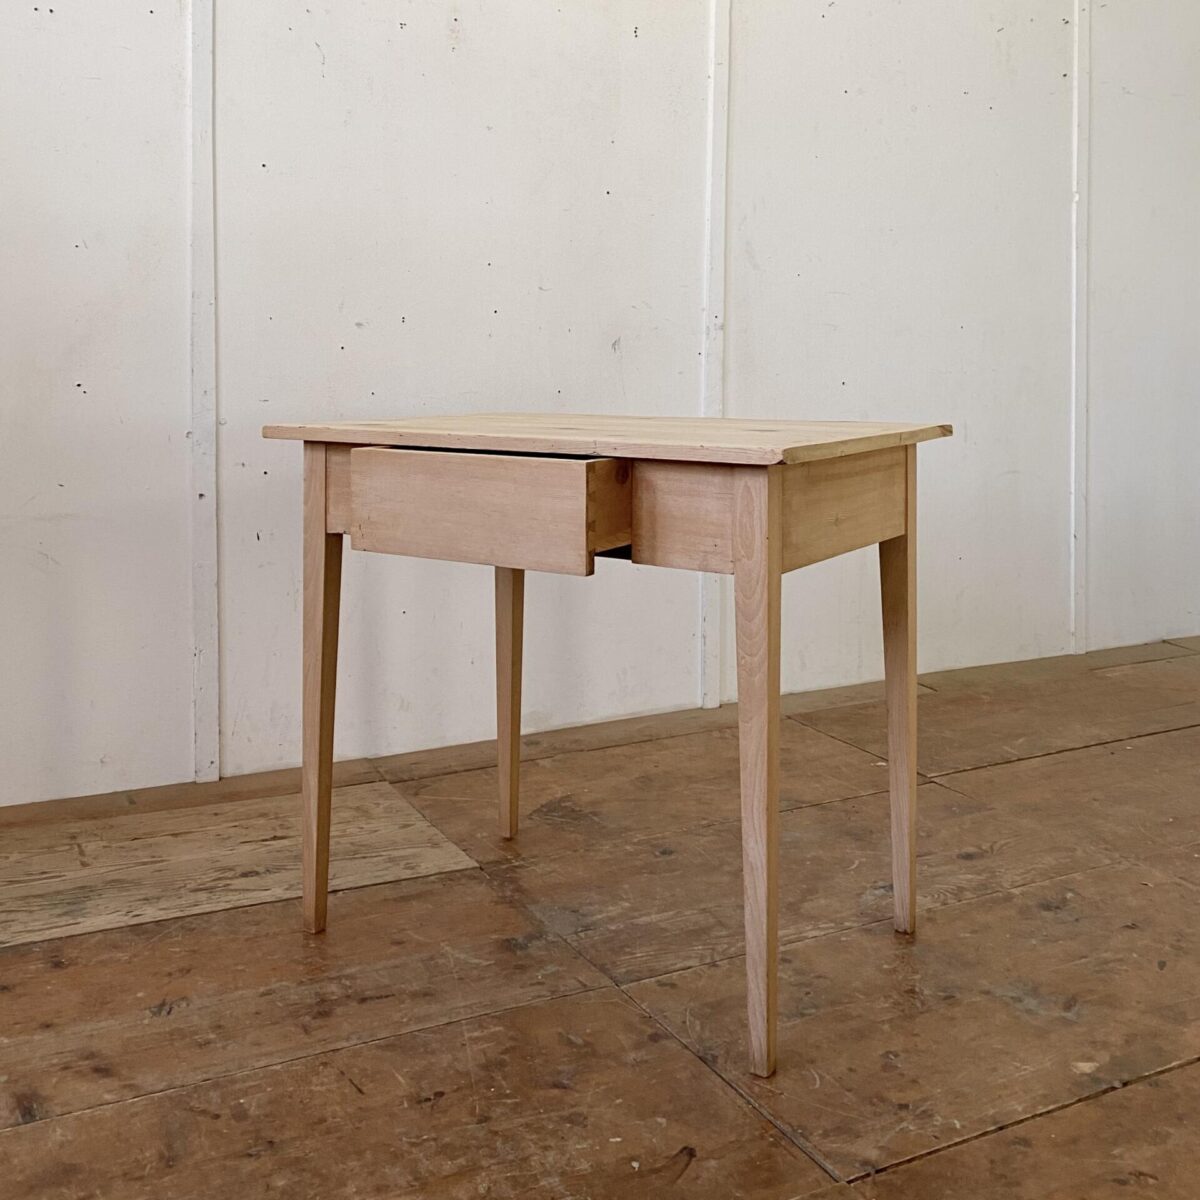 Deuxieme.shop Kleiner Biedermeier Schreibtisch aus Fichte Vollholz. 86.5x60cm Höhe 76.5cm. Der Tisch ist in stabilem Zustand, die Holz Oberflächen sind geschliffen und unbehandelt. Die konischen Tischbeine sind aus Buchenholz die Schublade läuft gut. 